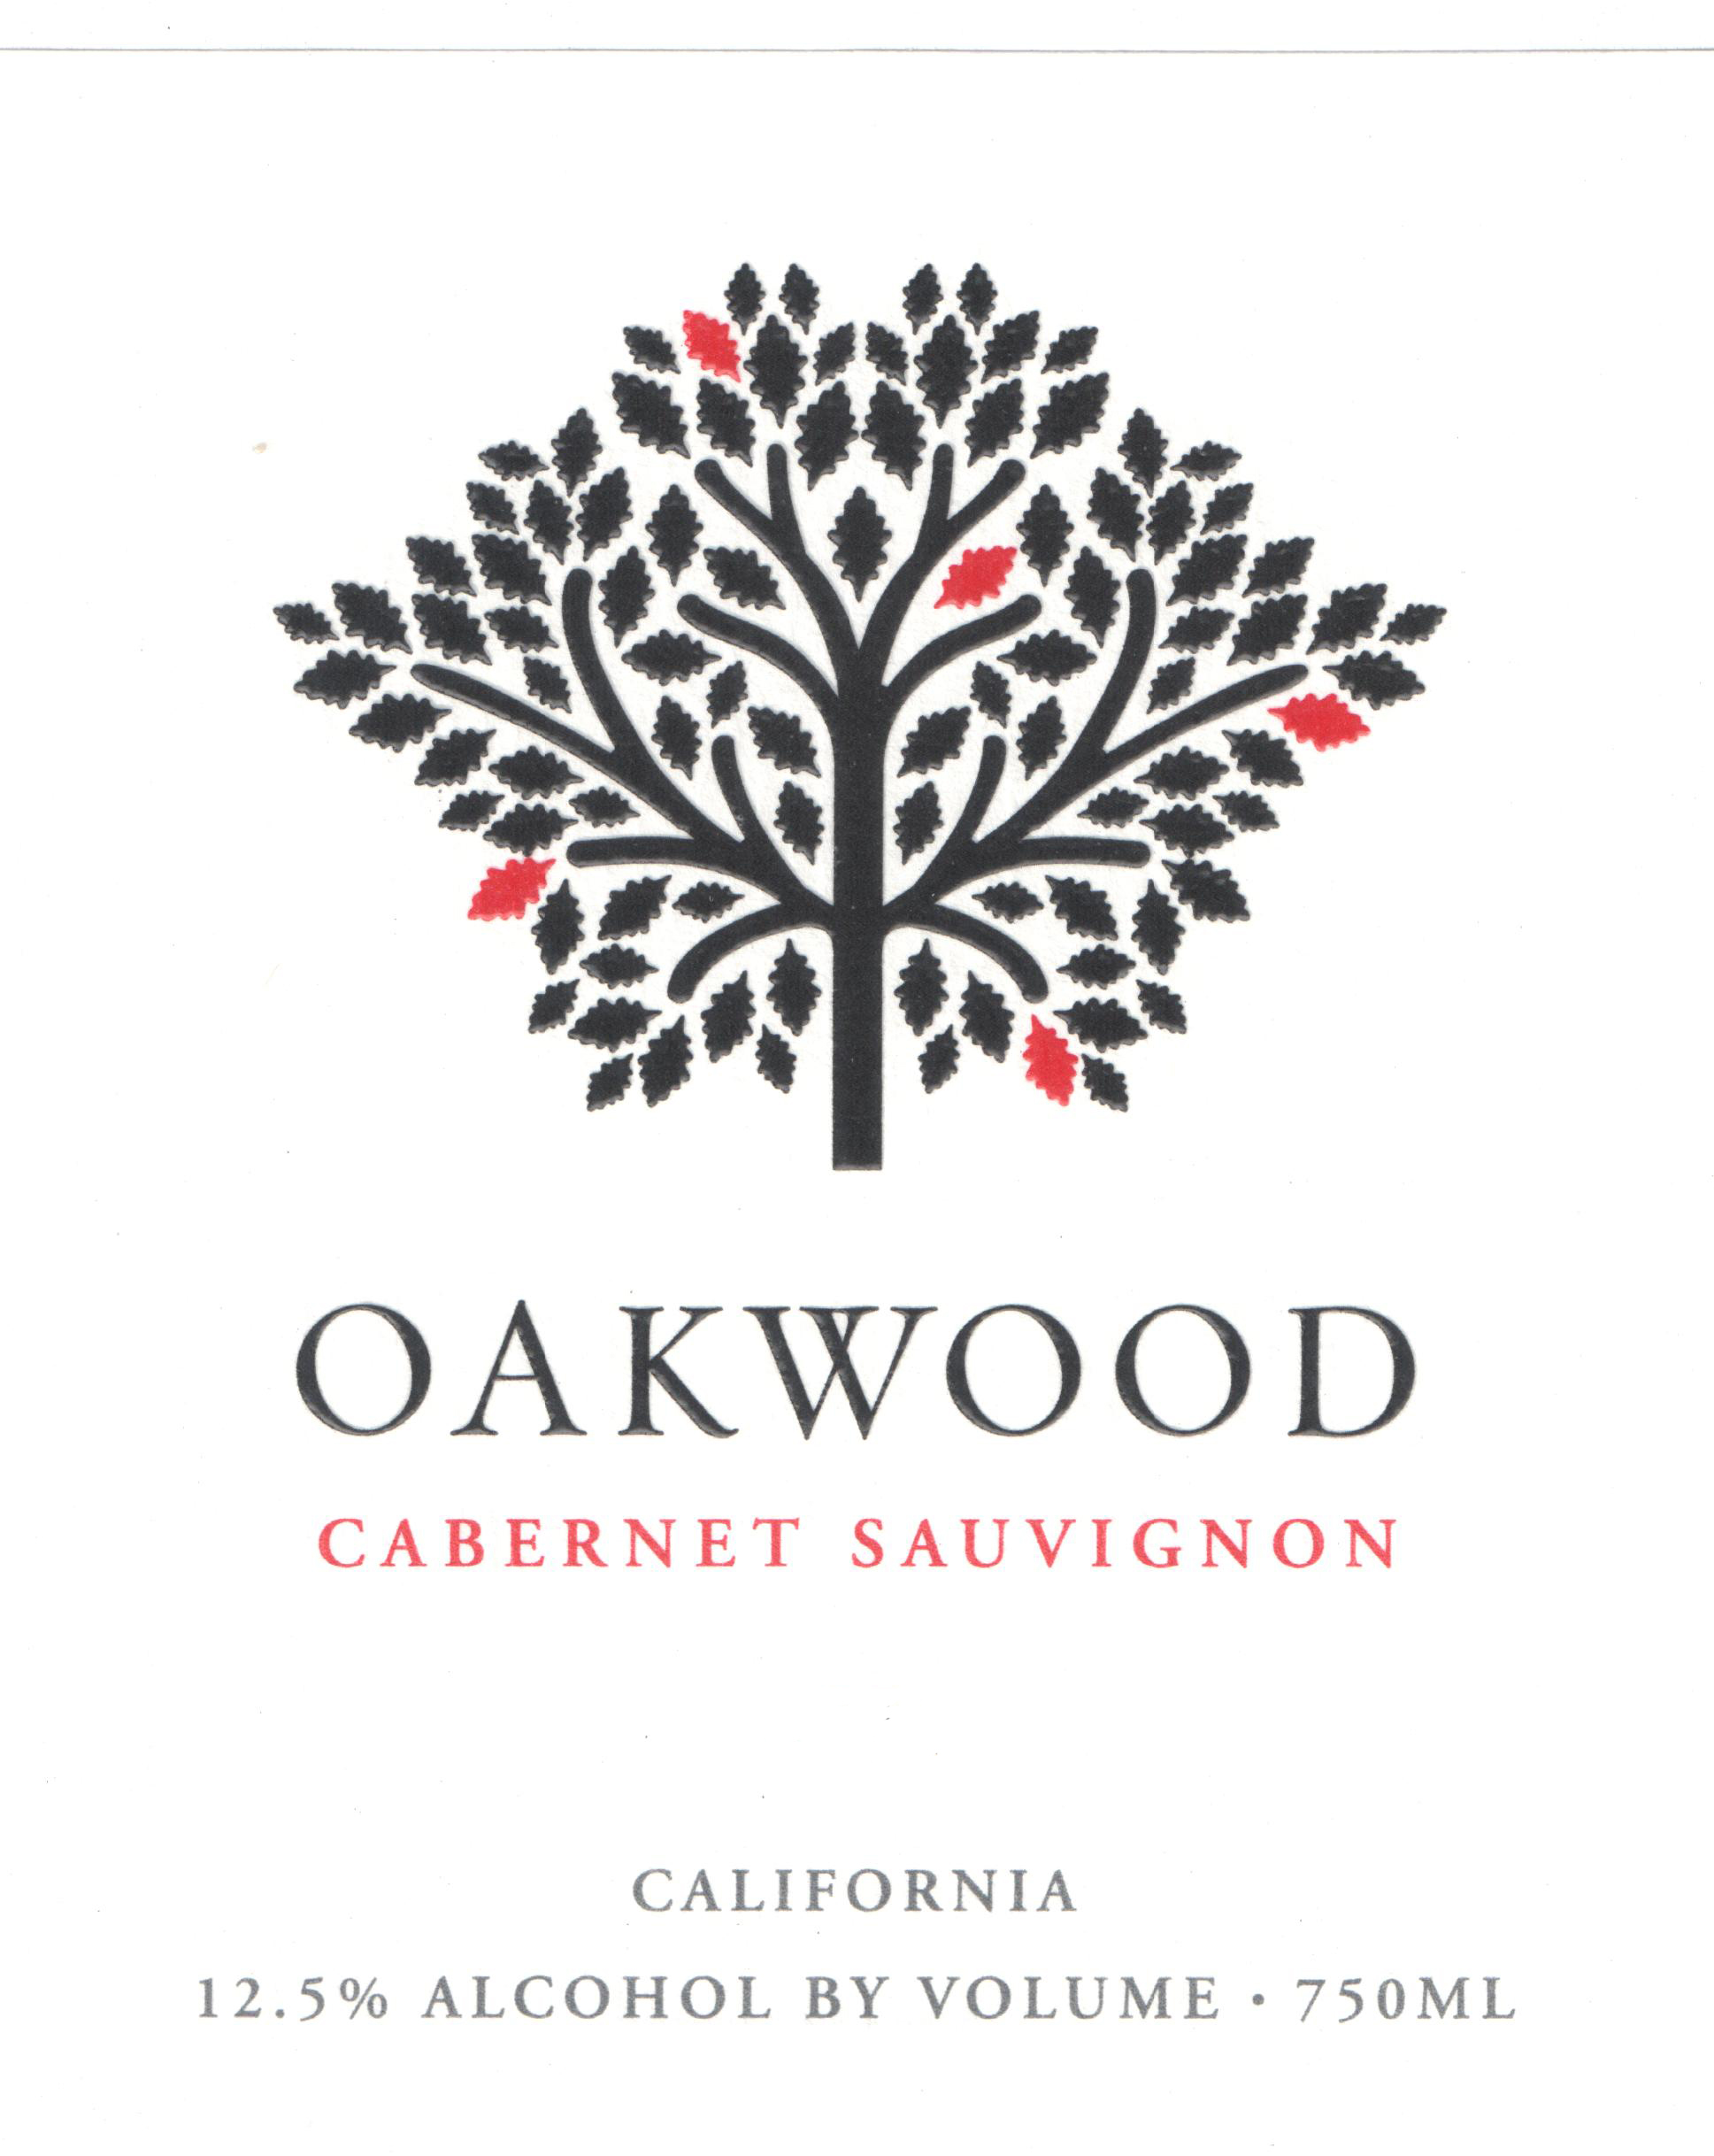 Oakwood - Cabernet Sauvignon label